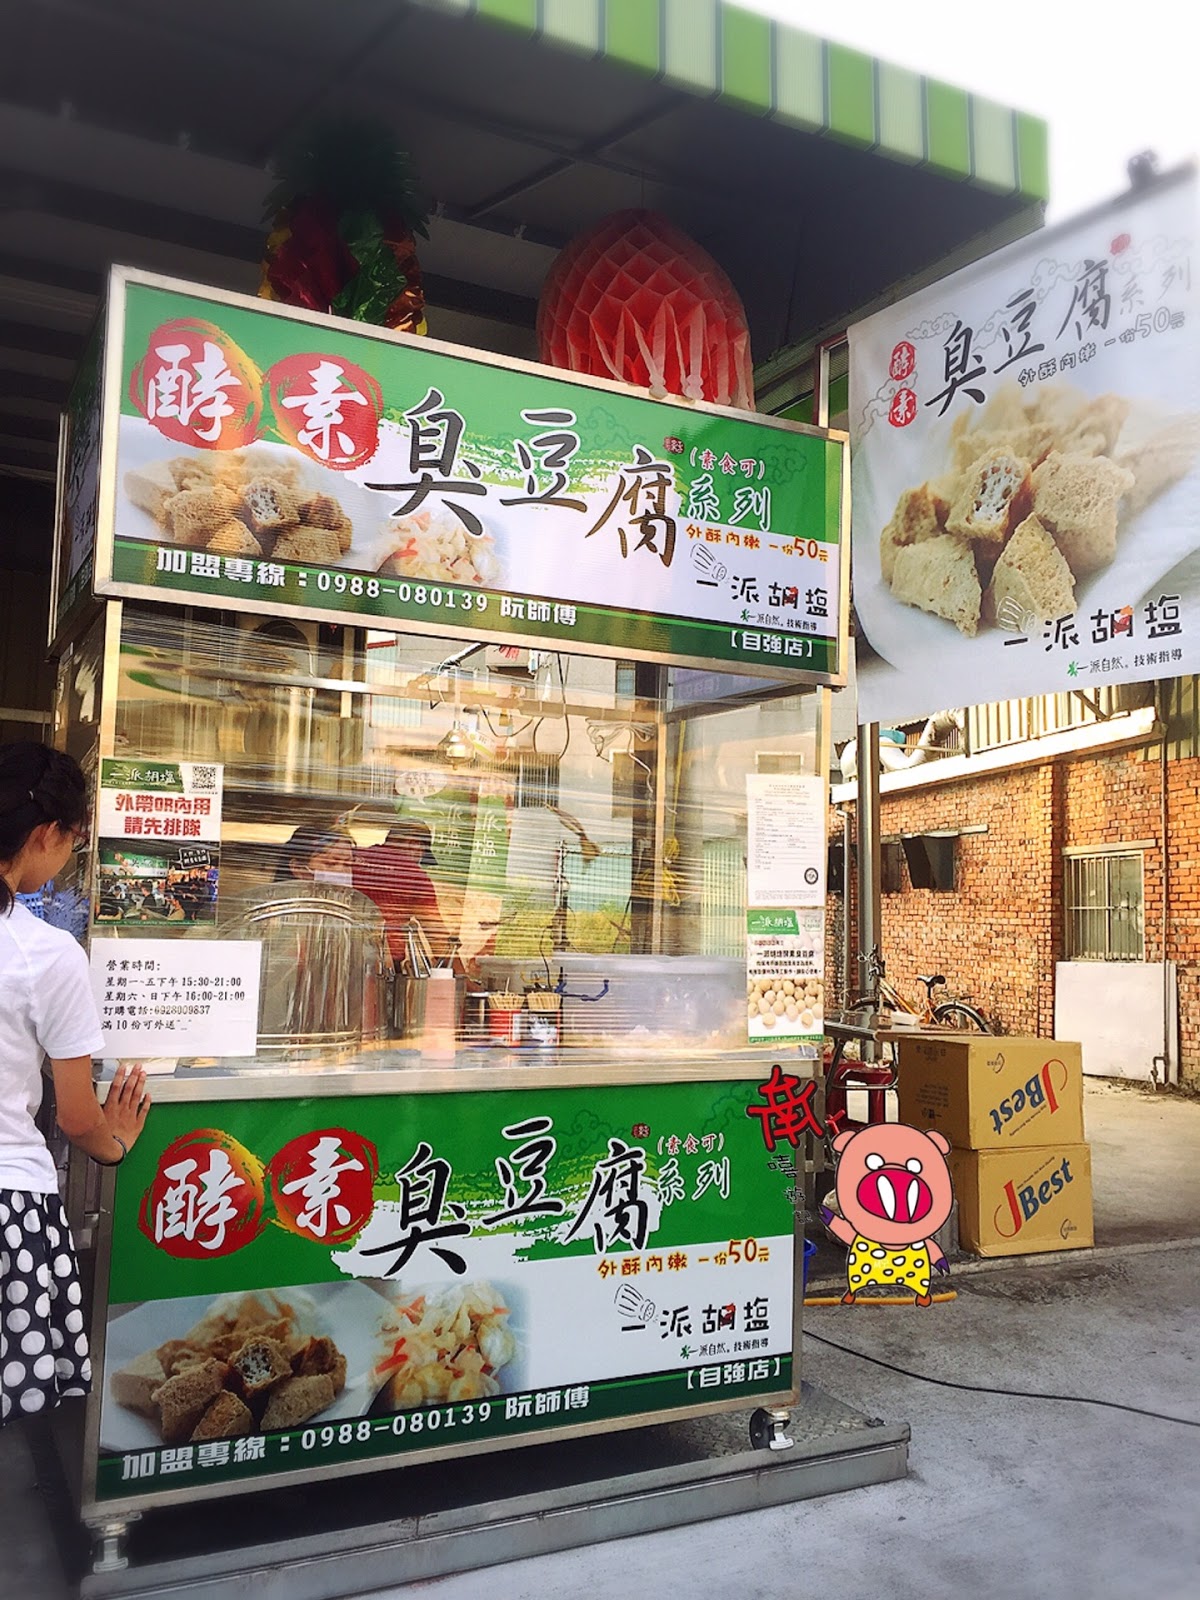 台南嘻遊記 一派胡塩酵素臭豆腐 自強店 台南市永康區的小點心